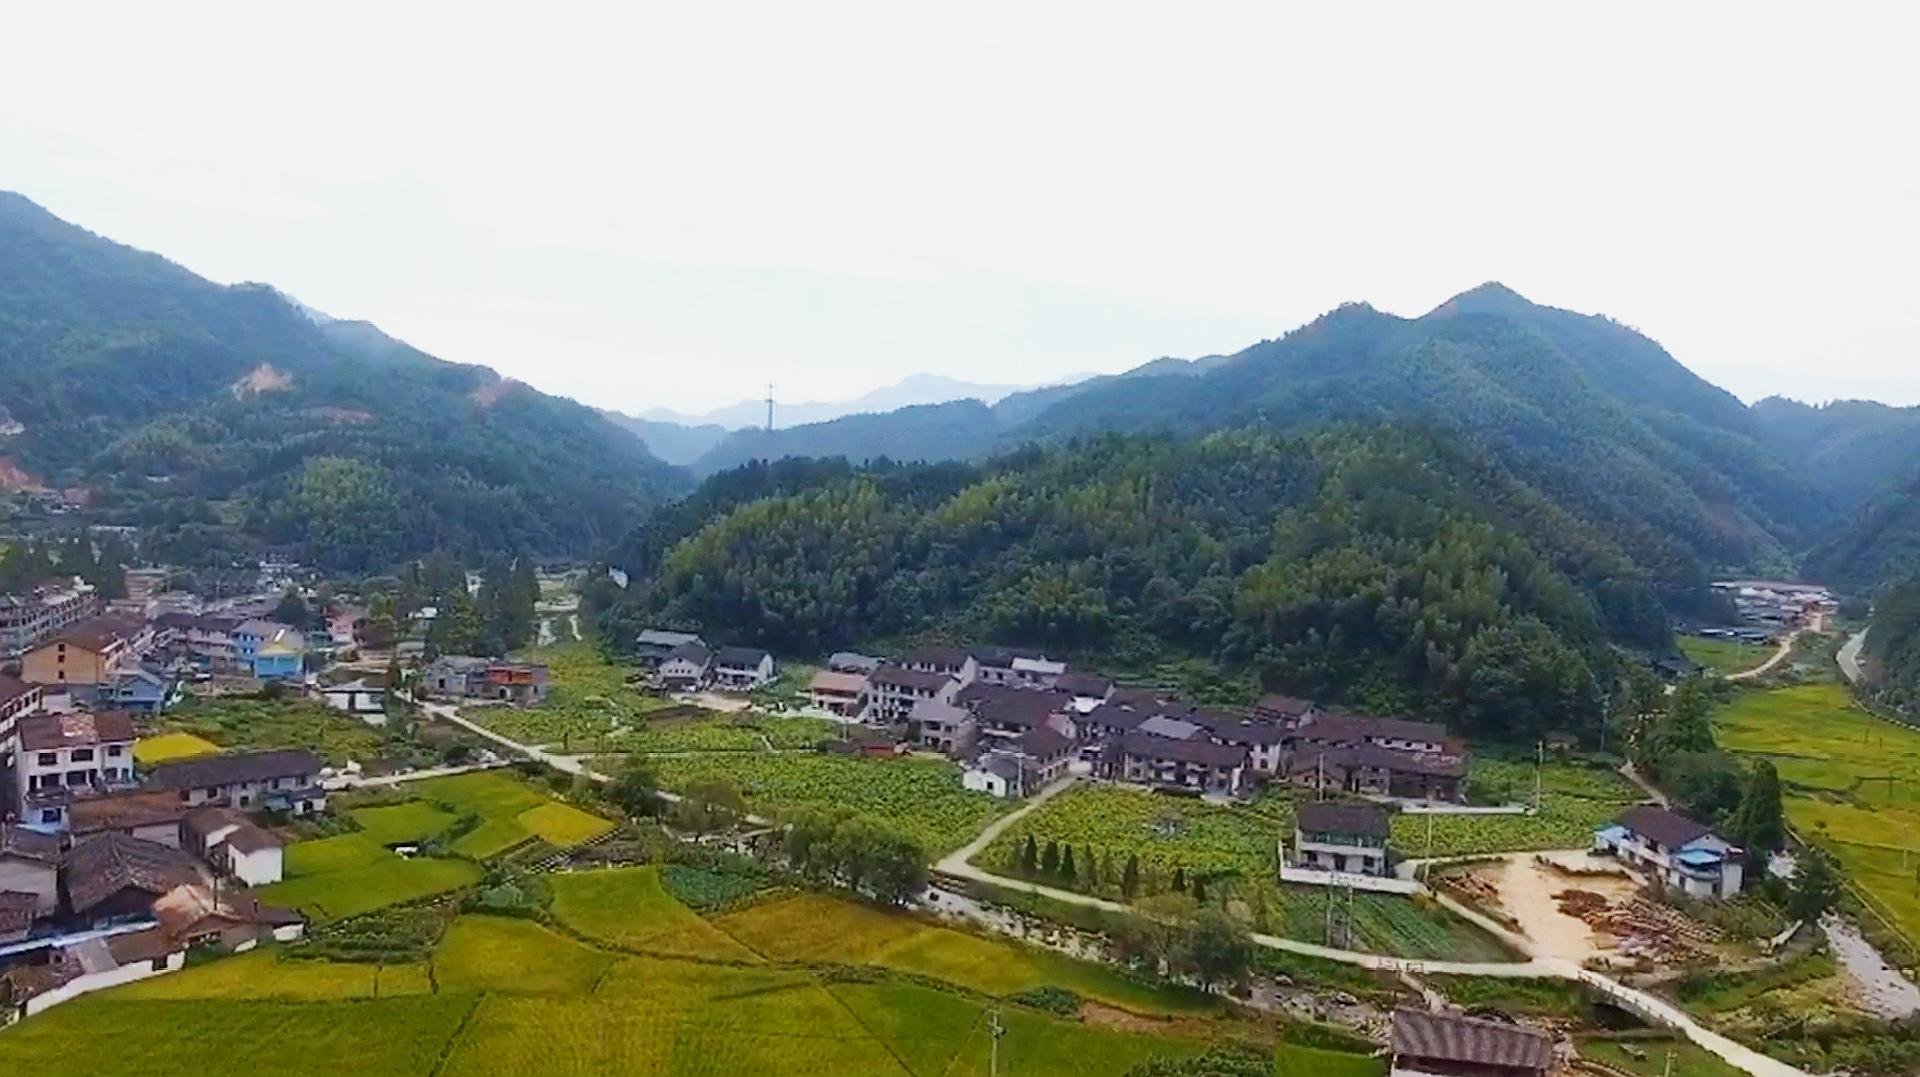 国内六大免费旅游景点,溪头村被誉为广州最美乡村,此生一定要去5个